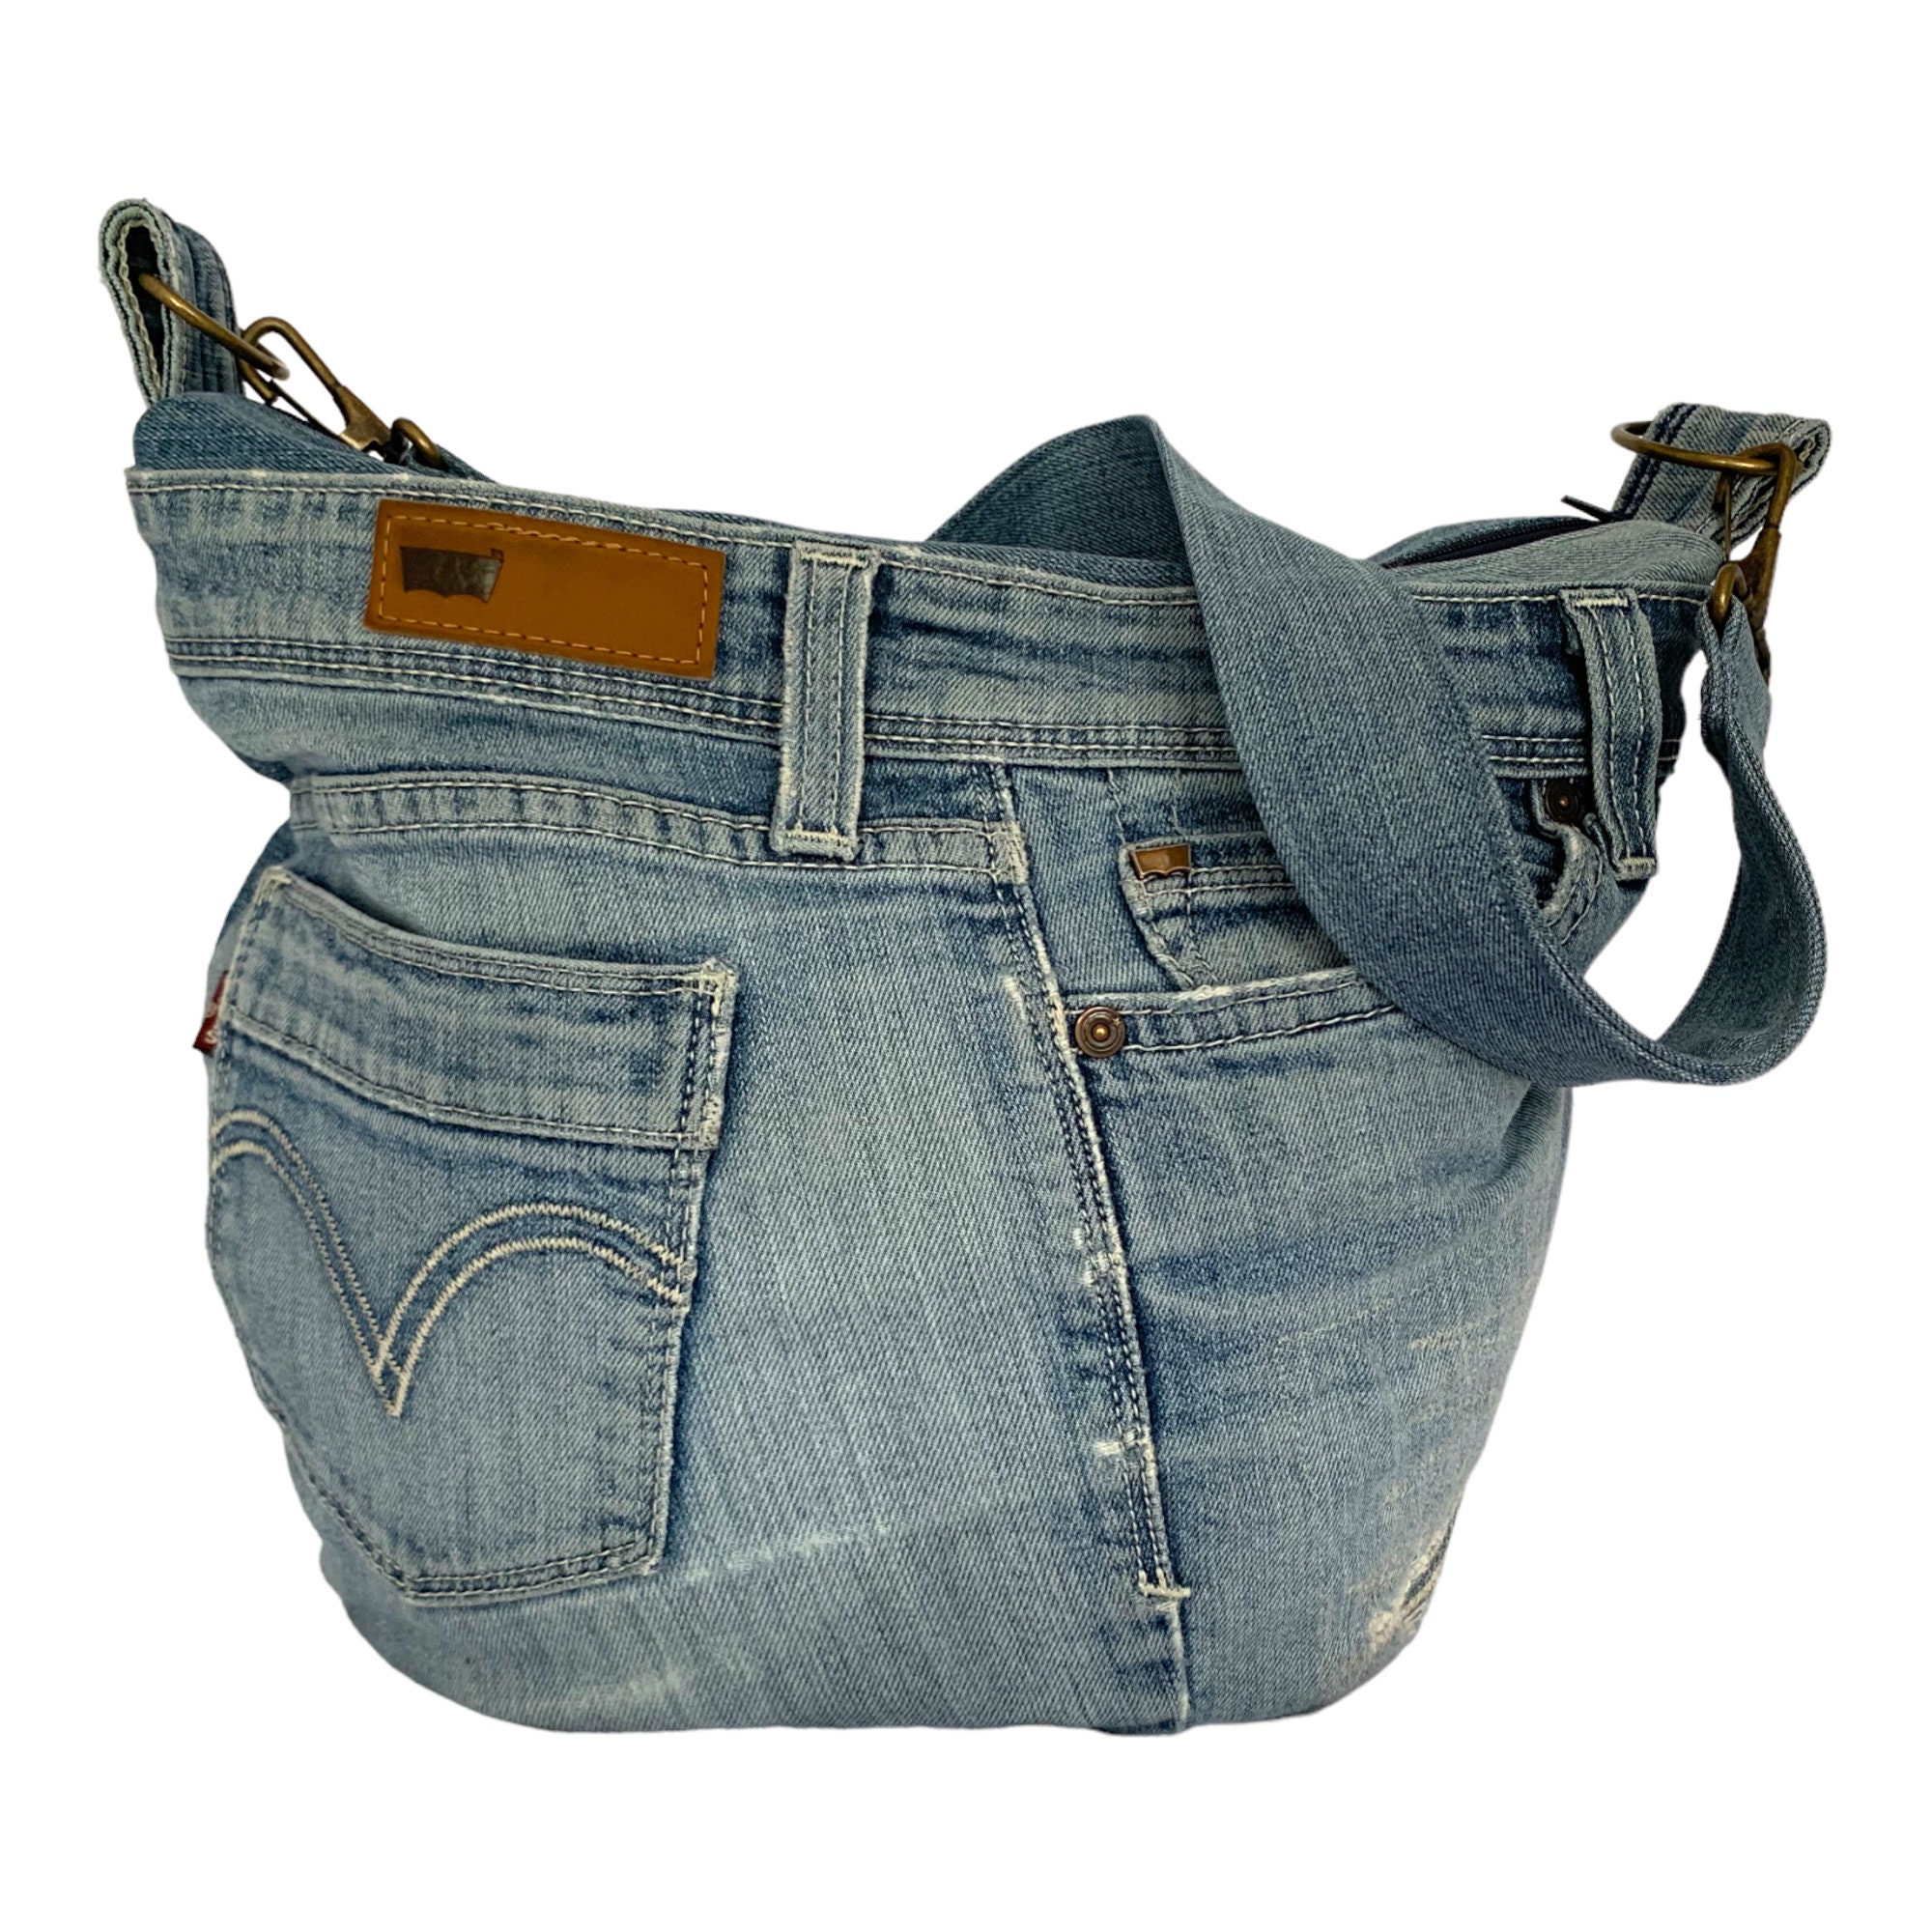 Boho fringed bag made of upcycled denim fabric